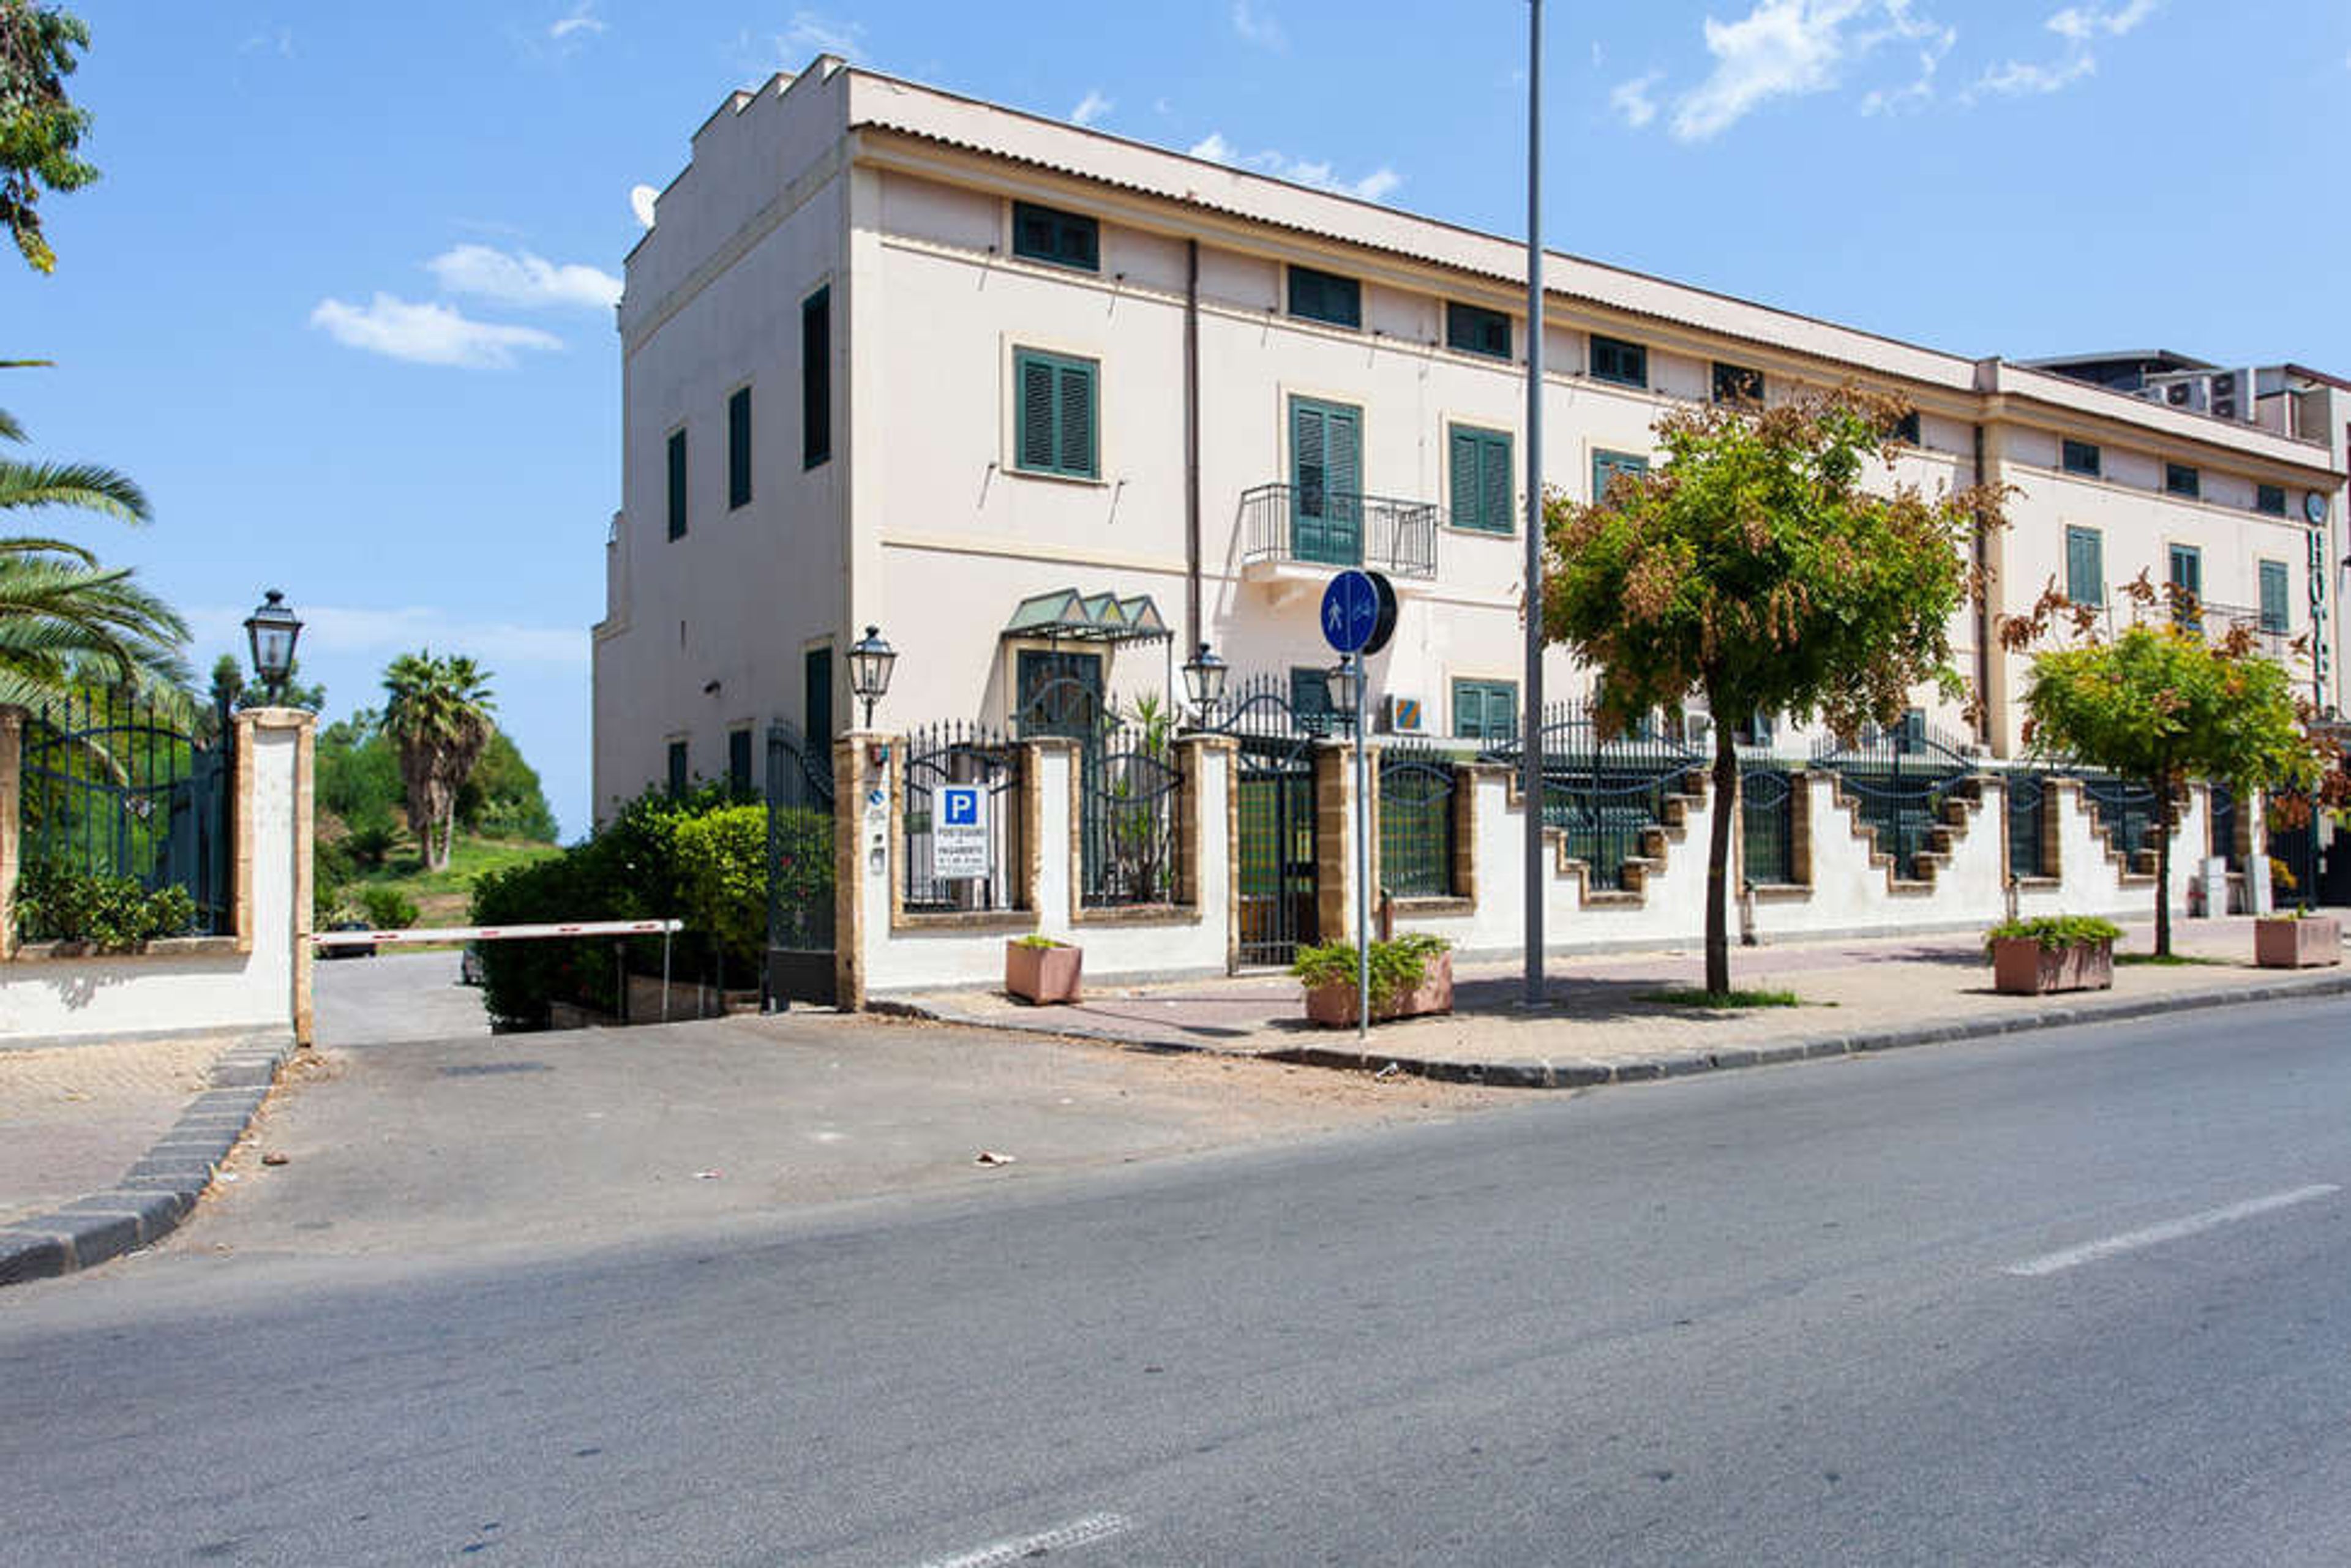 Villa D'Amato